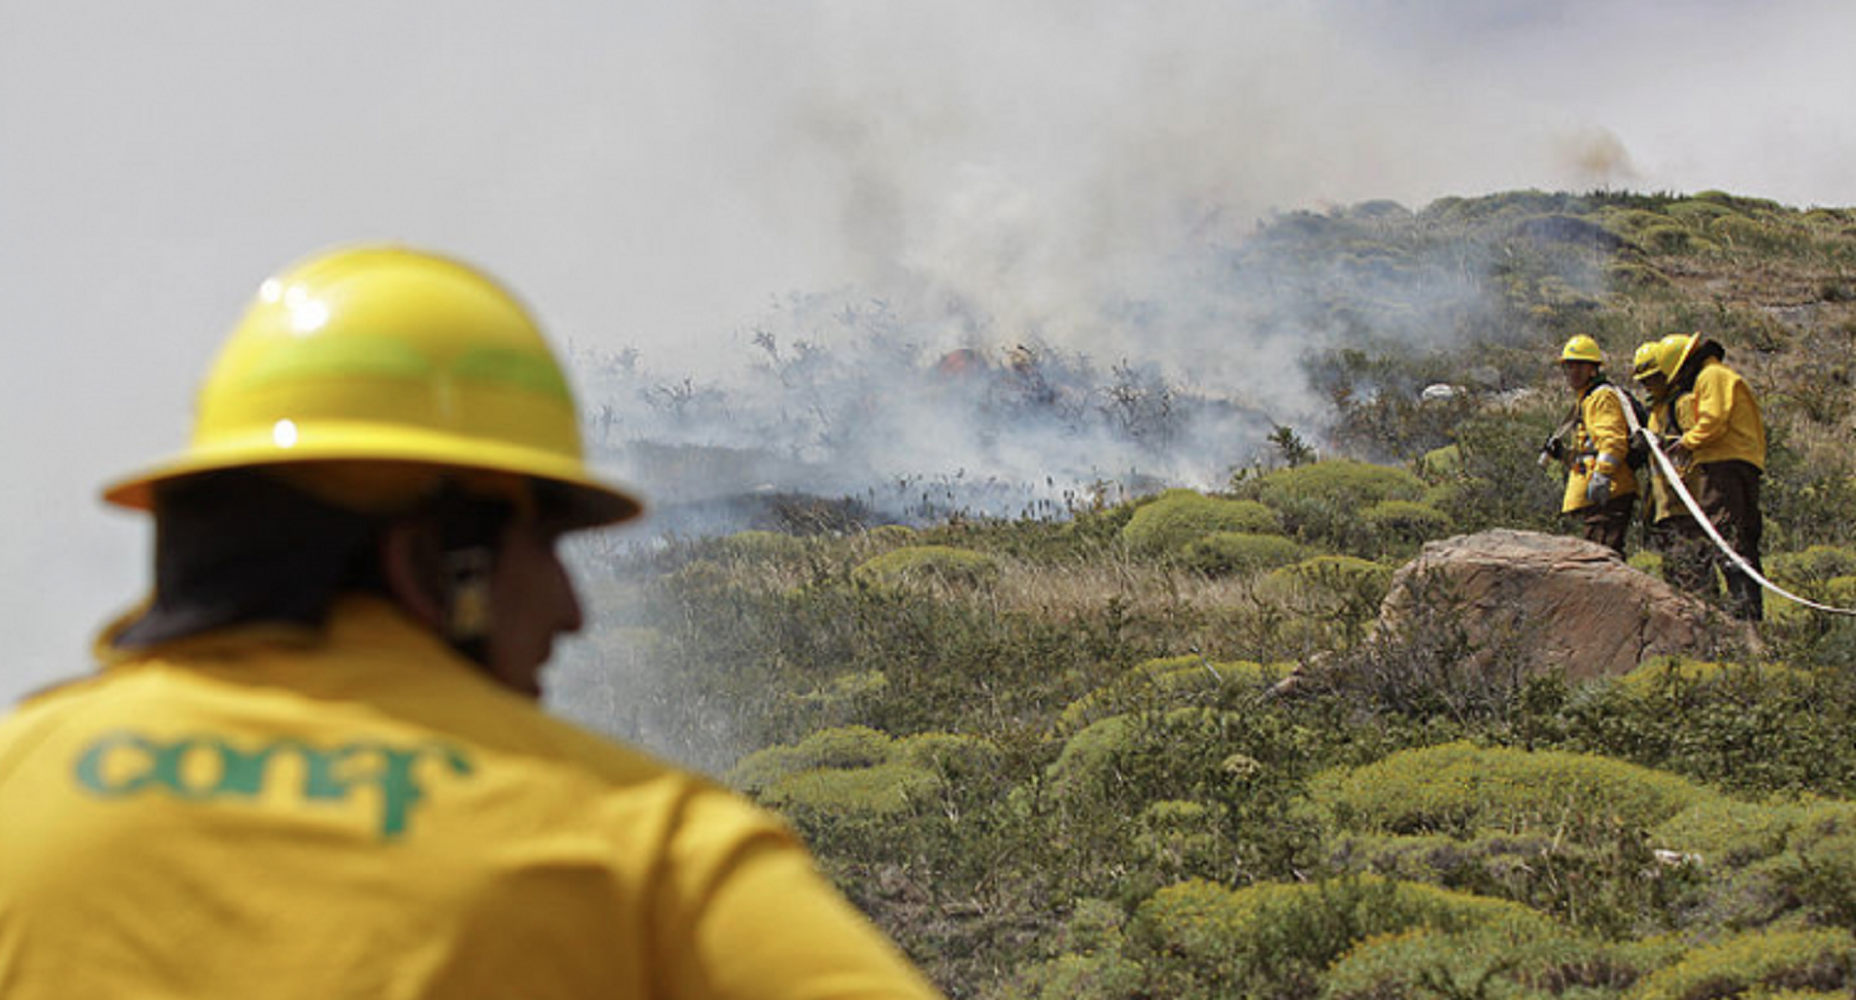  La Corporación Nacional Forestal (CONAF) confirma 17 incendios forestales registrados a nivel nacional